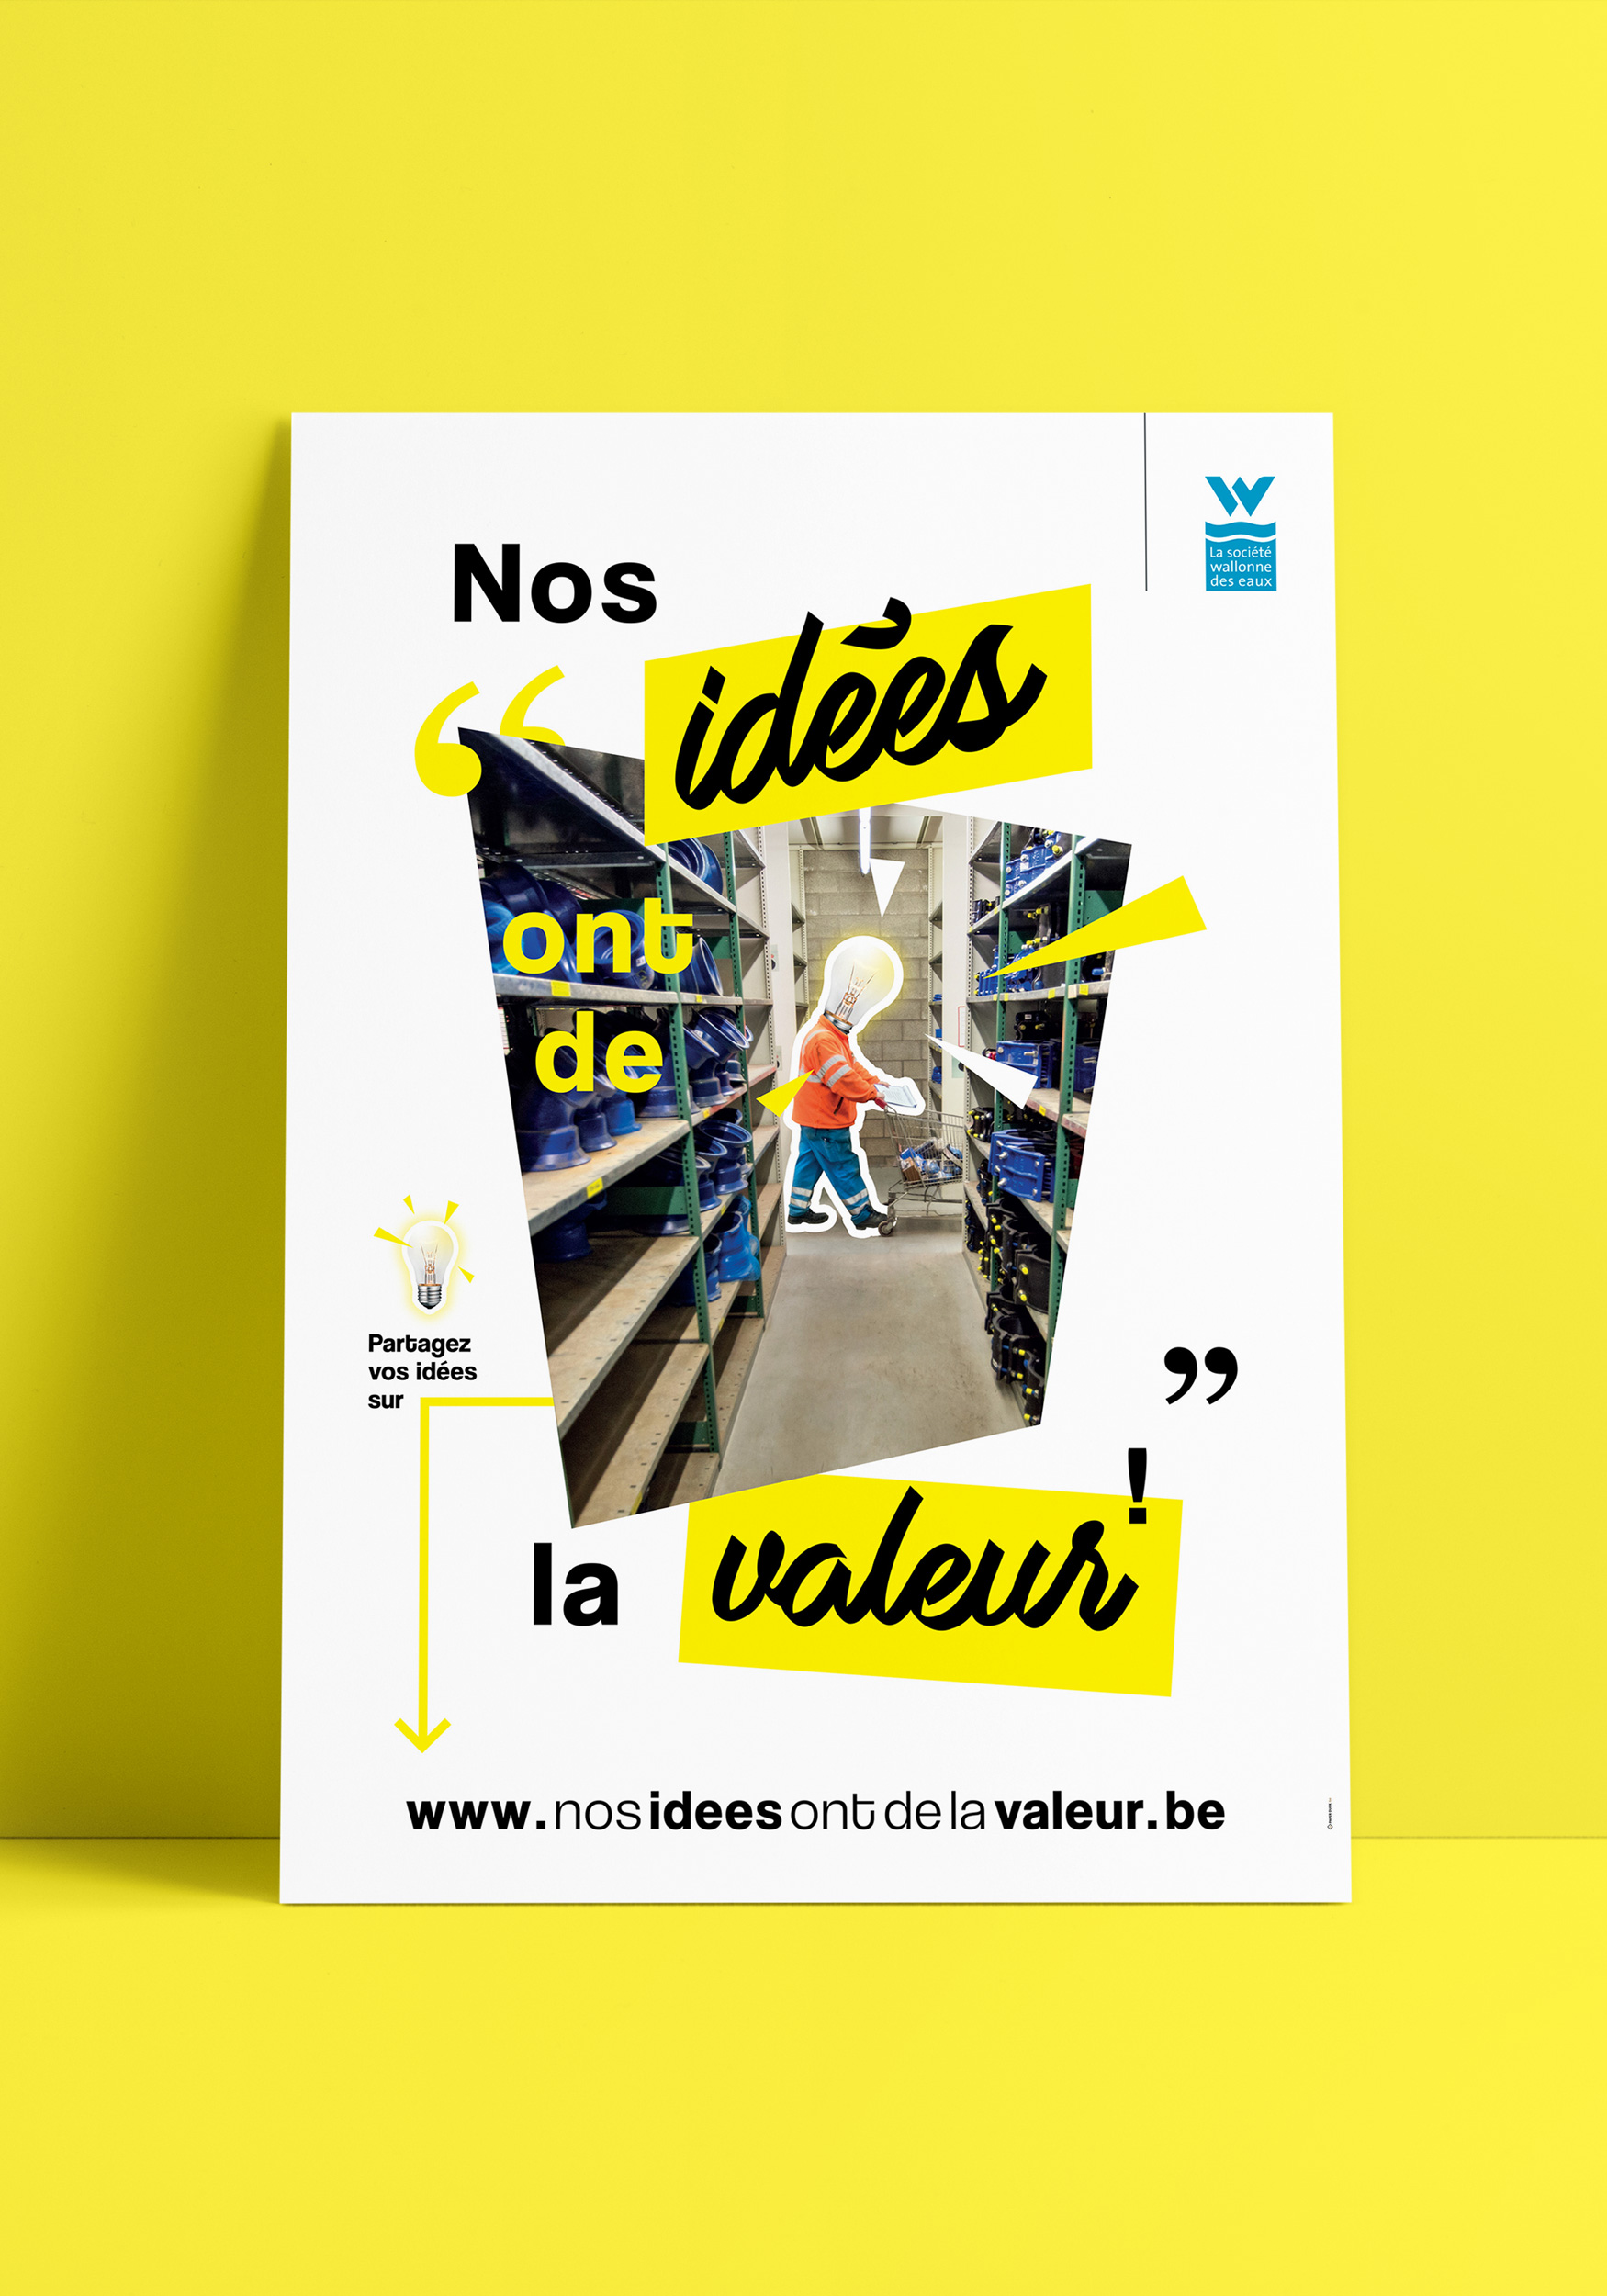 Mockup d'une des 5 affiches de la campagne de communication "Nos idées ont de la valeur" sur appuyée sur un mu jaune